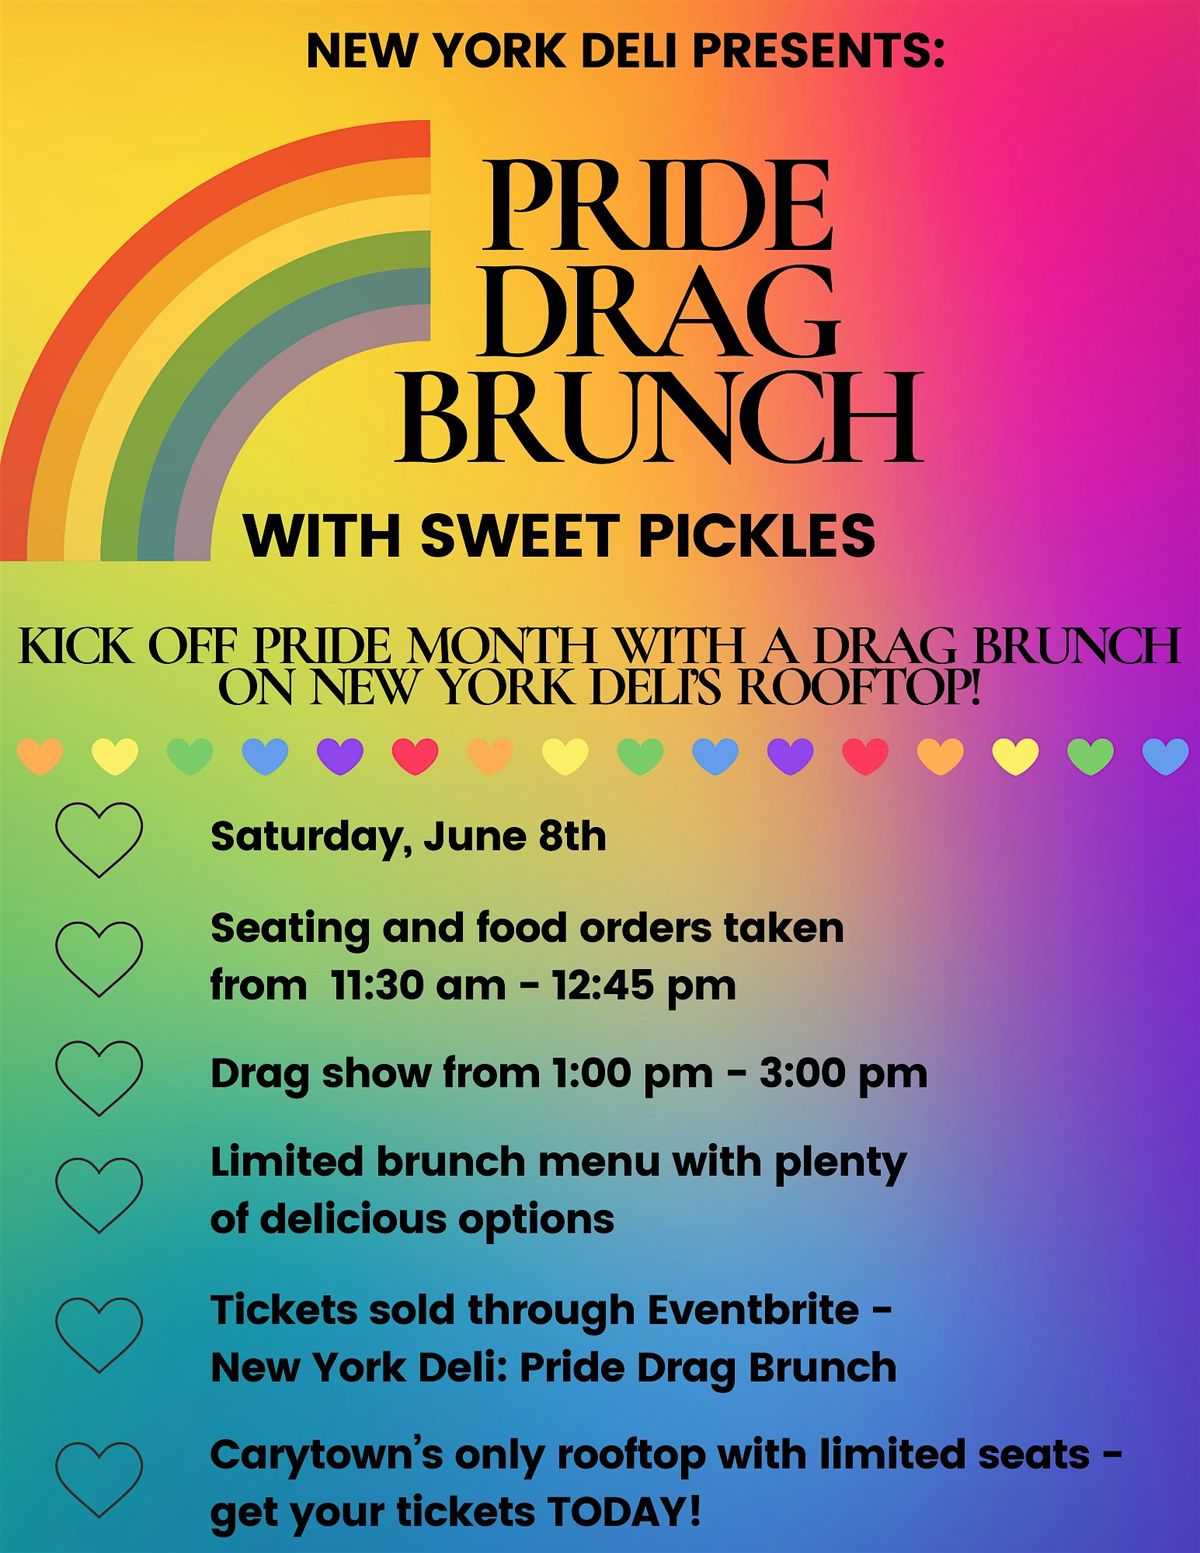 New York Deli Presents: Pride Drag Brunch